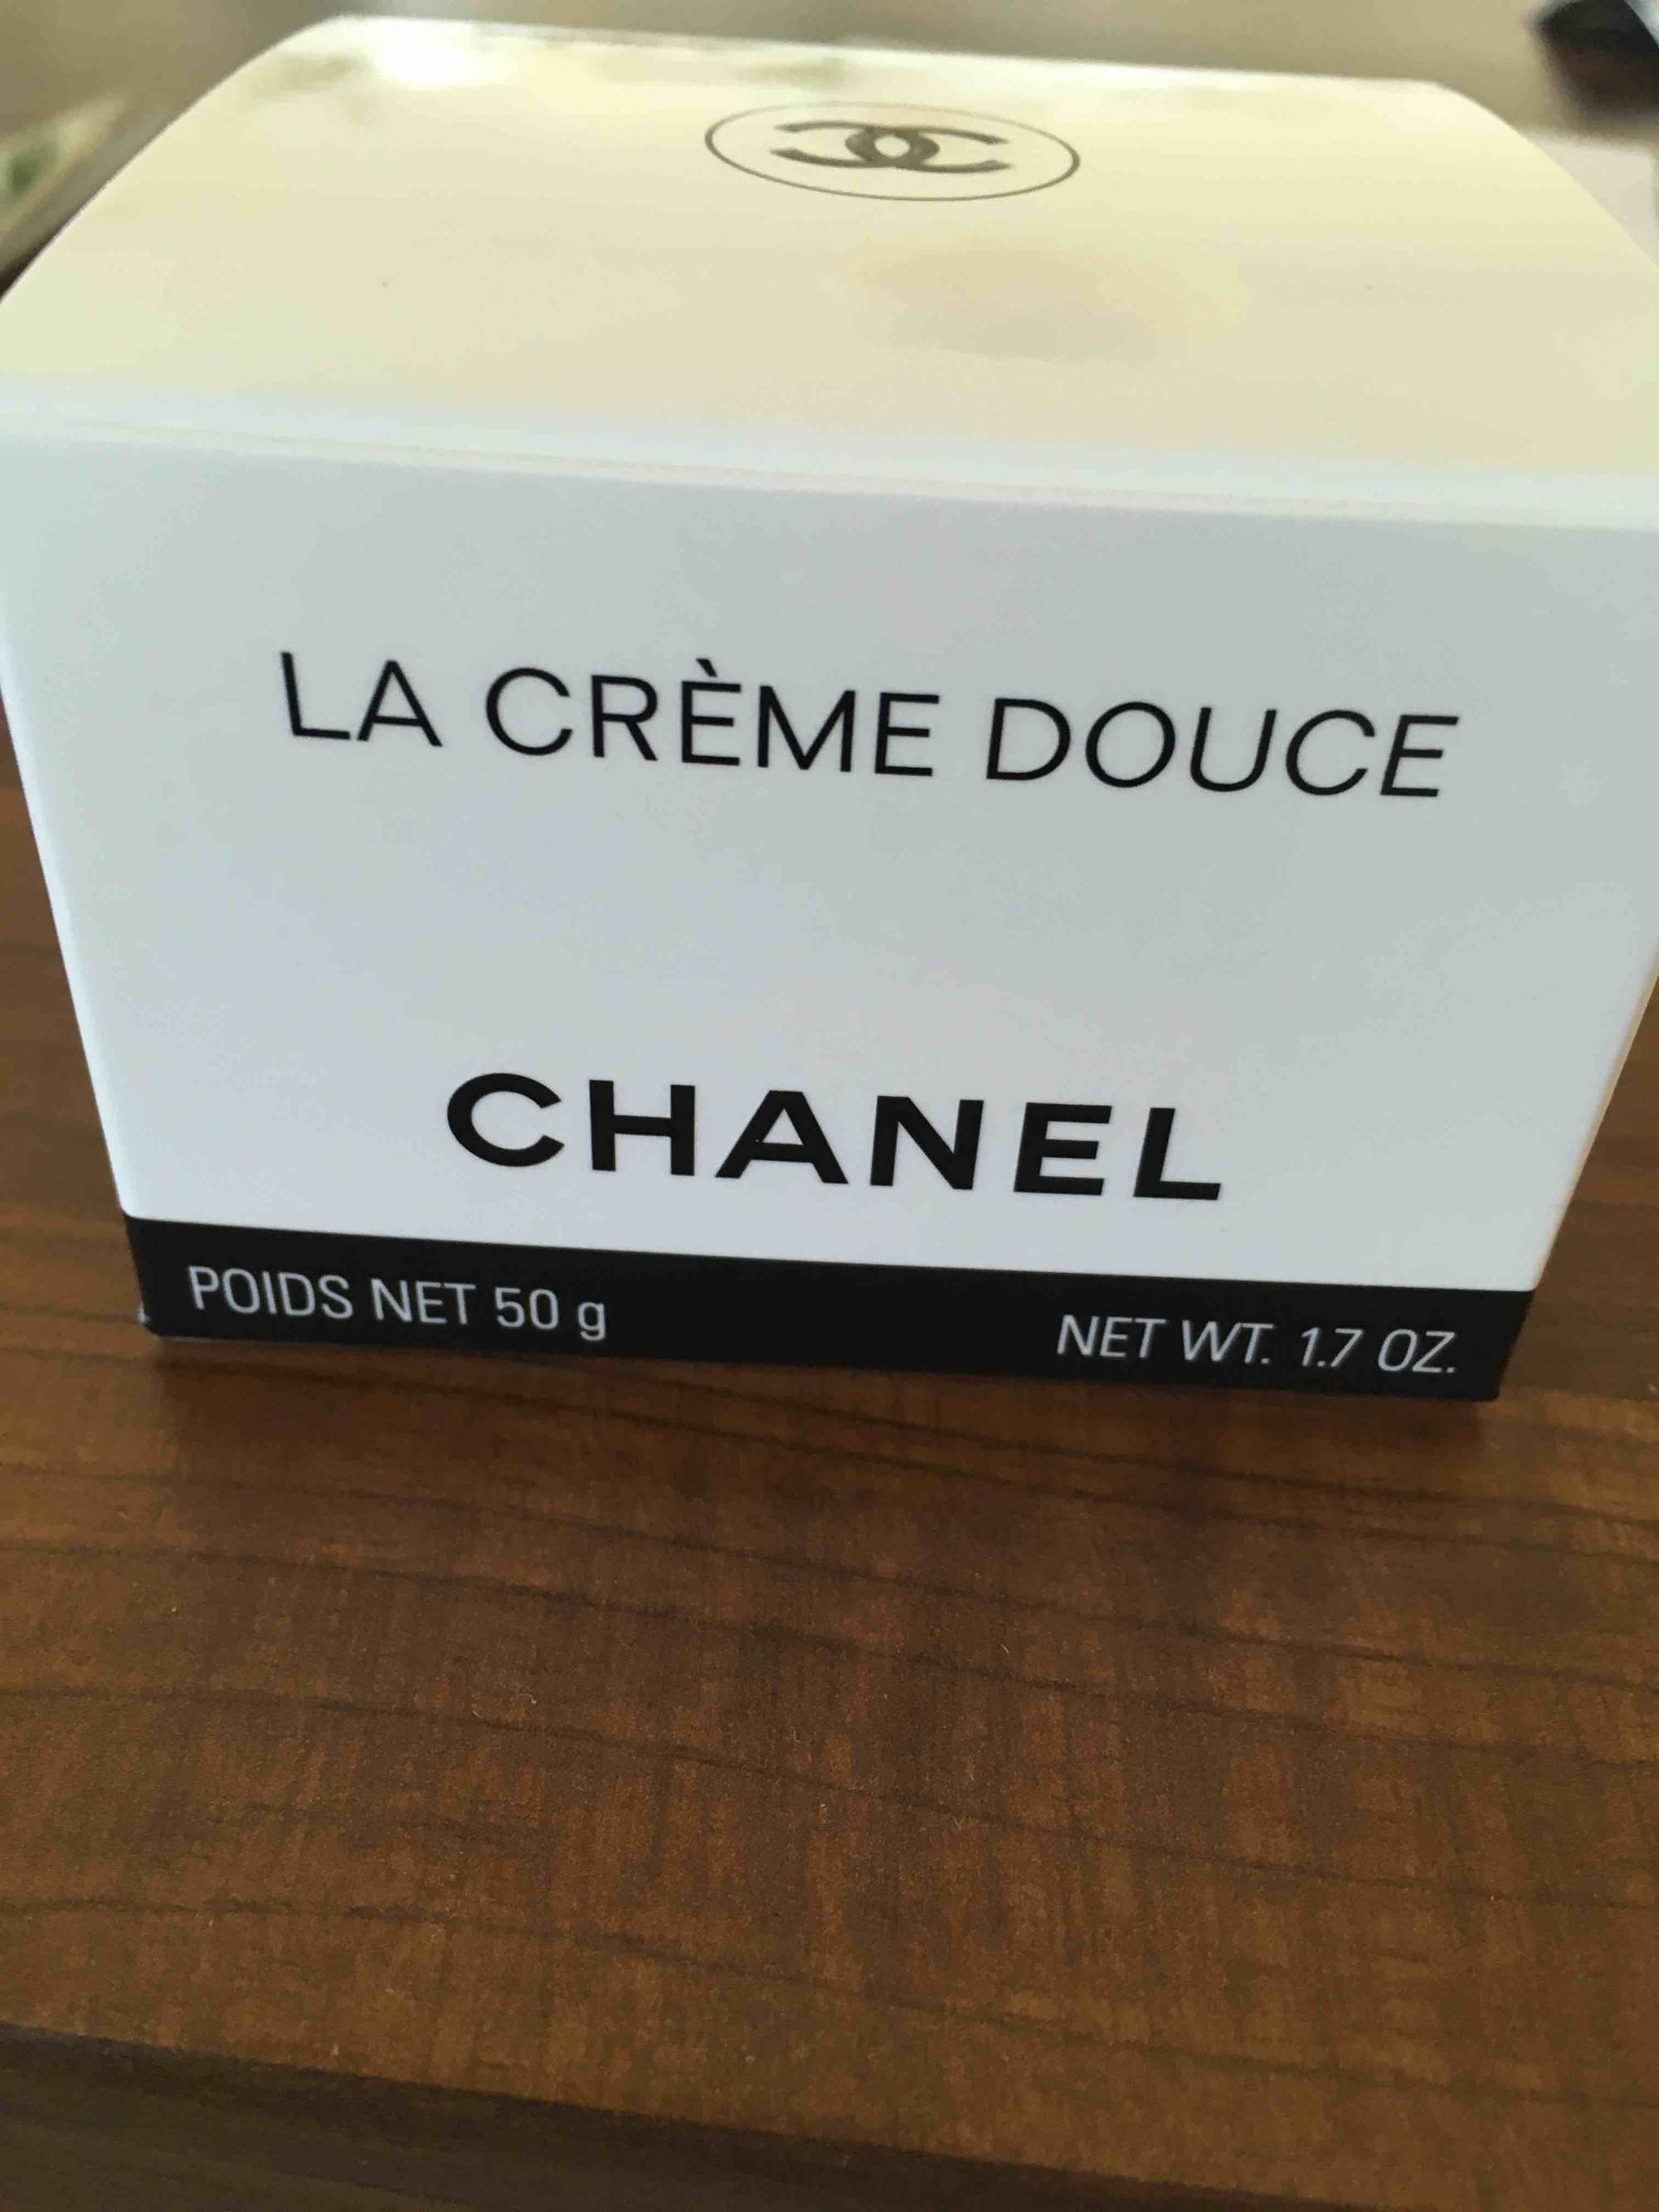 CHANEL - La crème douce